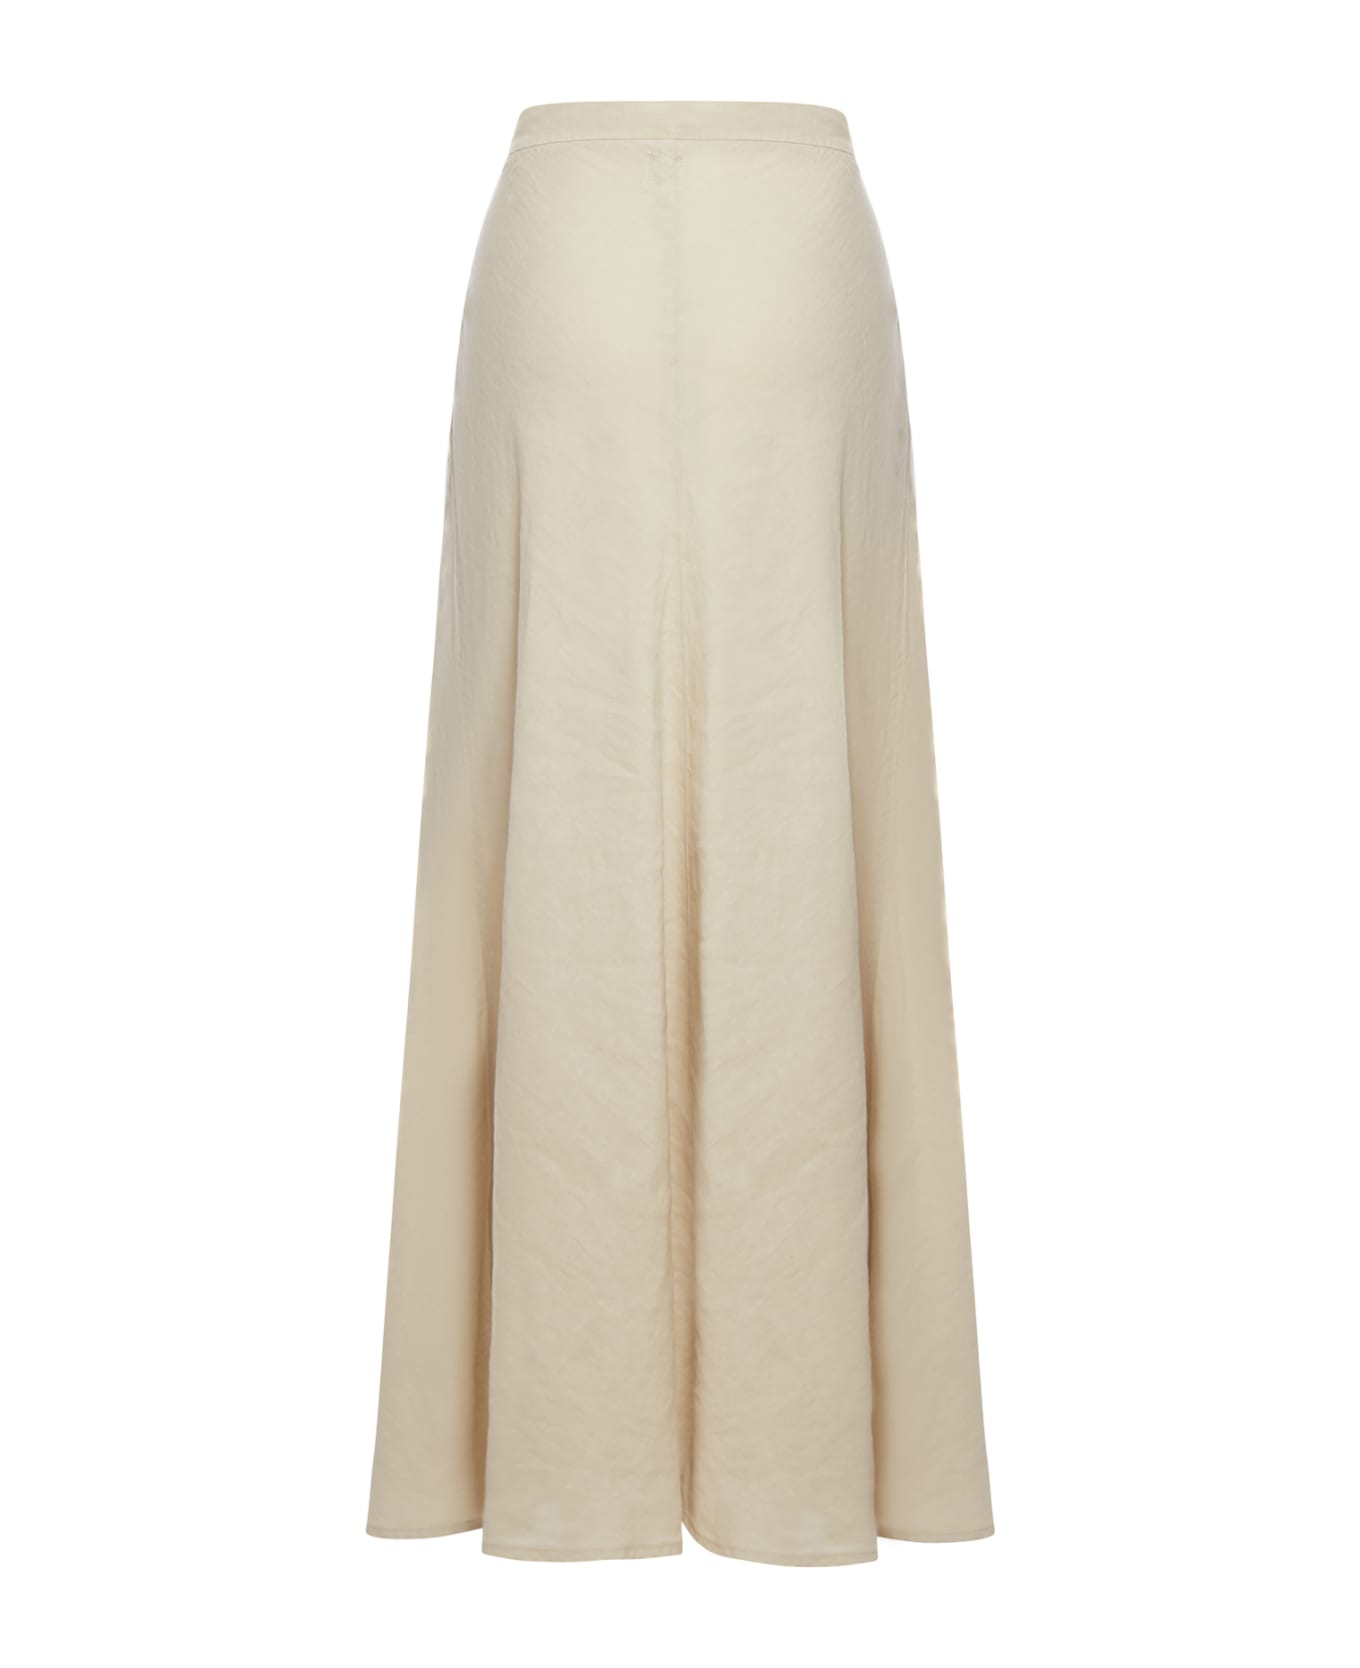 120% Lino Long Skirt - Nut スカート